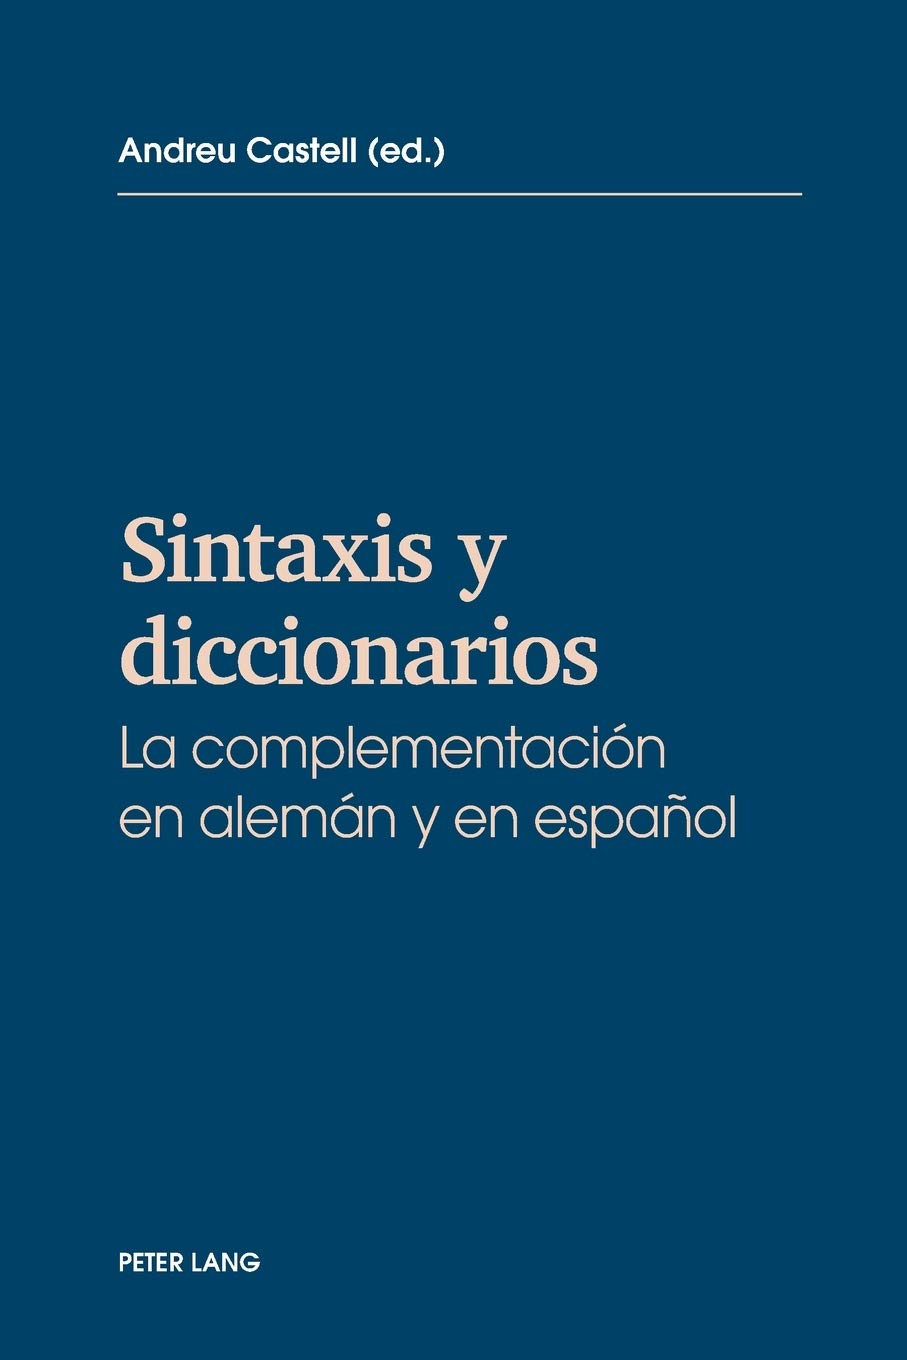 Imagen de portada del libro Sintaxis y diccionarios